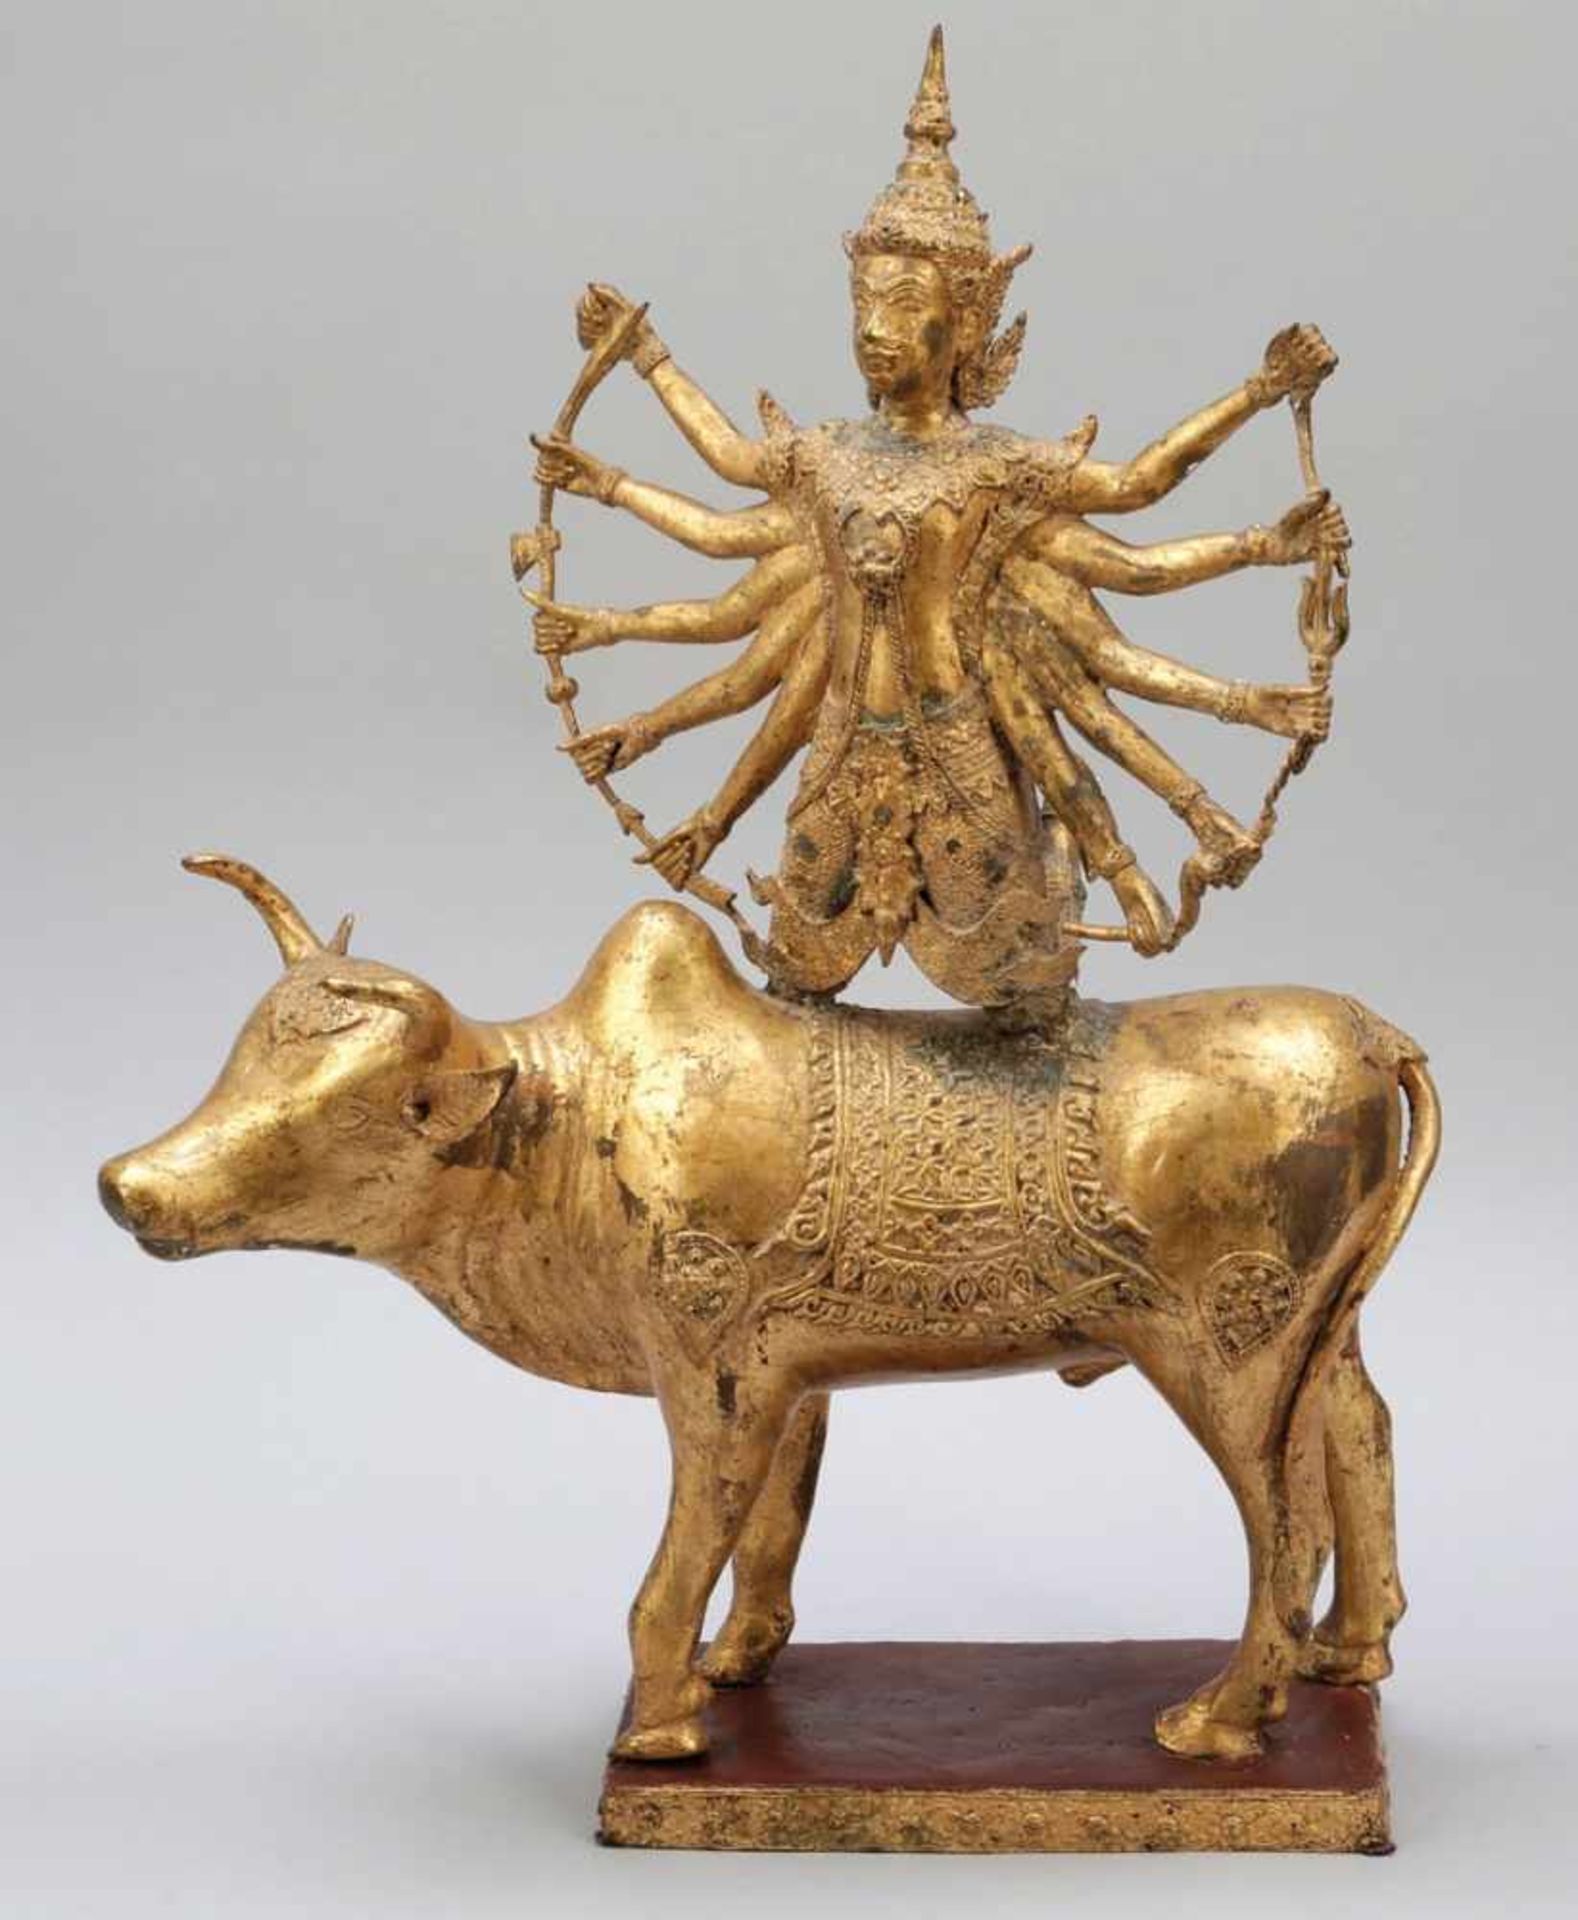 Shiva auf dem Stier Thailand, frühes 20. Jahrhundert. Bronze, vergoldet. H. 68 cm. Shiva ist einer